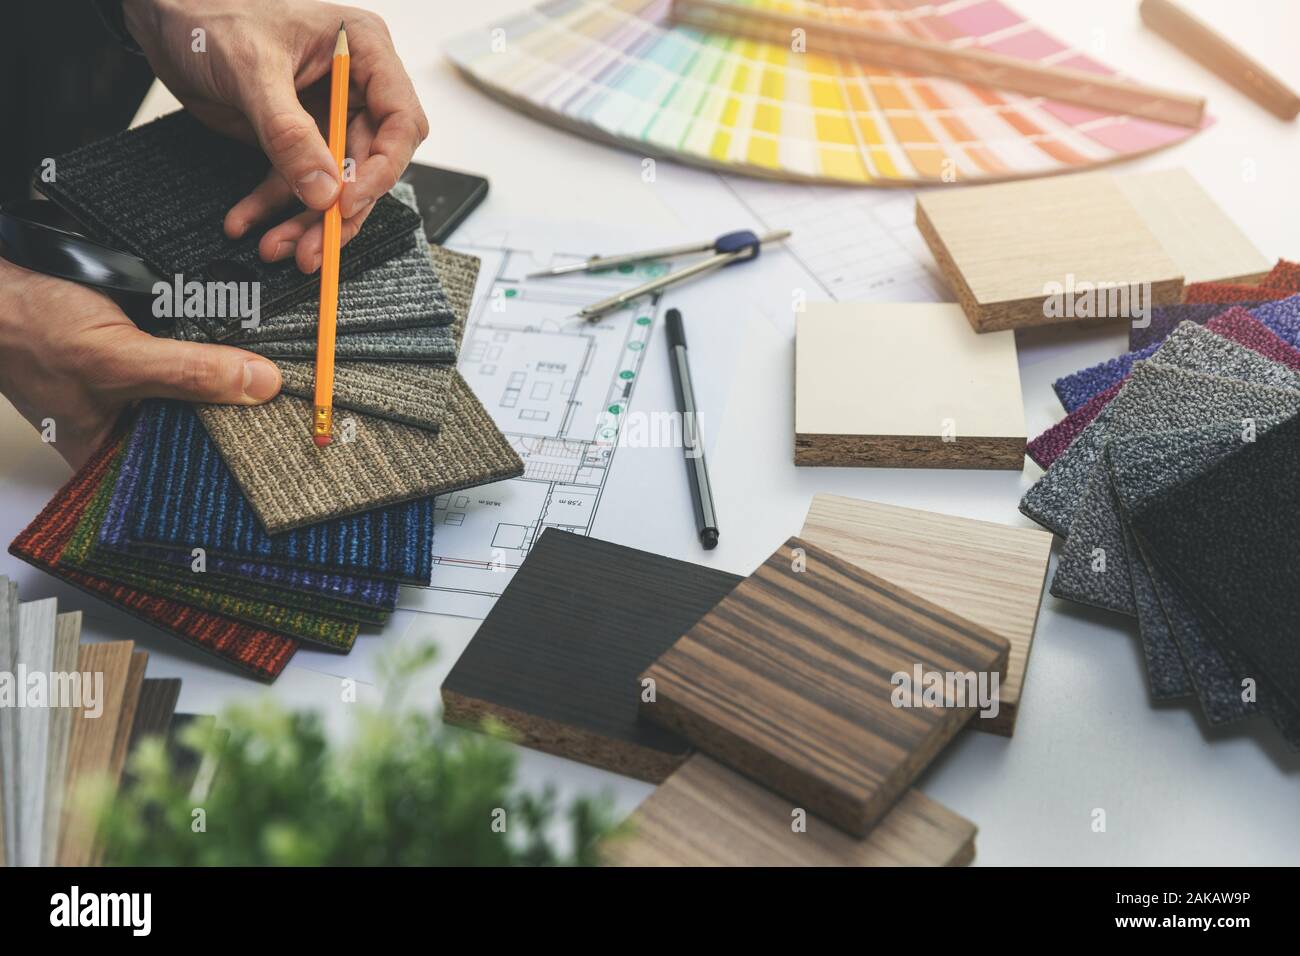 Designer auswählen Bodenbeläge und Möbel Materialien von Proben für Home Interior Design Projekt Stockfoto